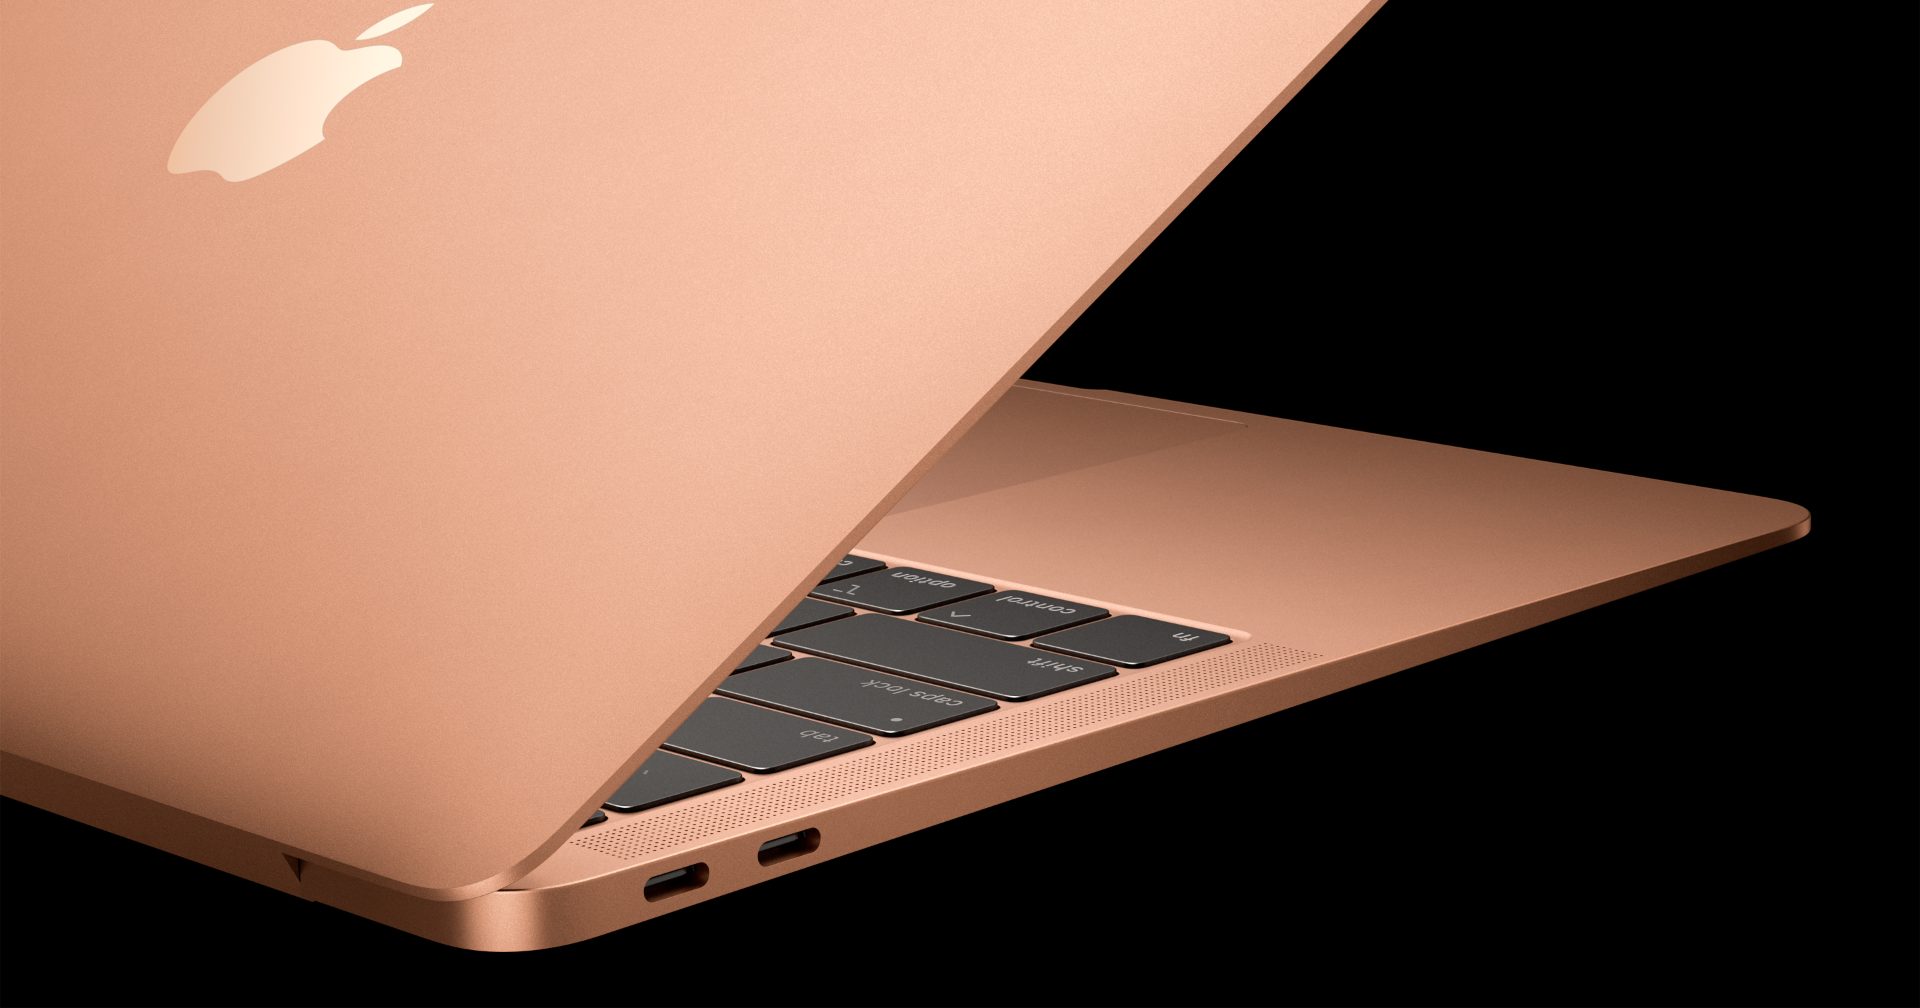 ปิดฉาก MacBook Air ดีไซน์เก่า รุ่นที่เริ่มใช้พอร์ต USB-C เปิดตัวครั้งแรกเมื่อปี 2018